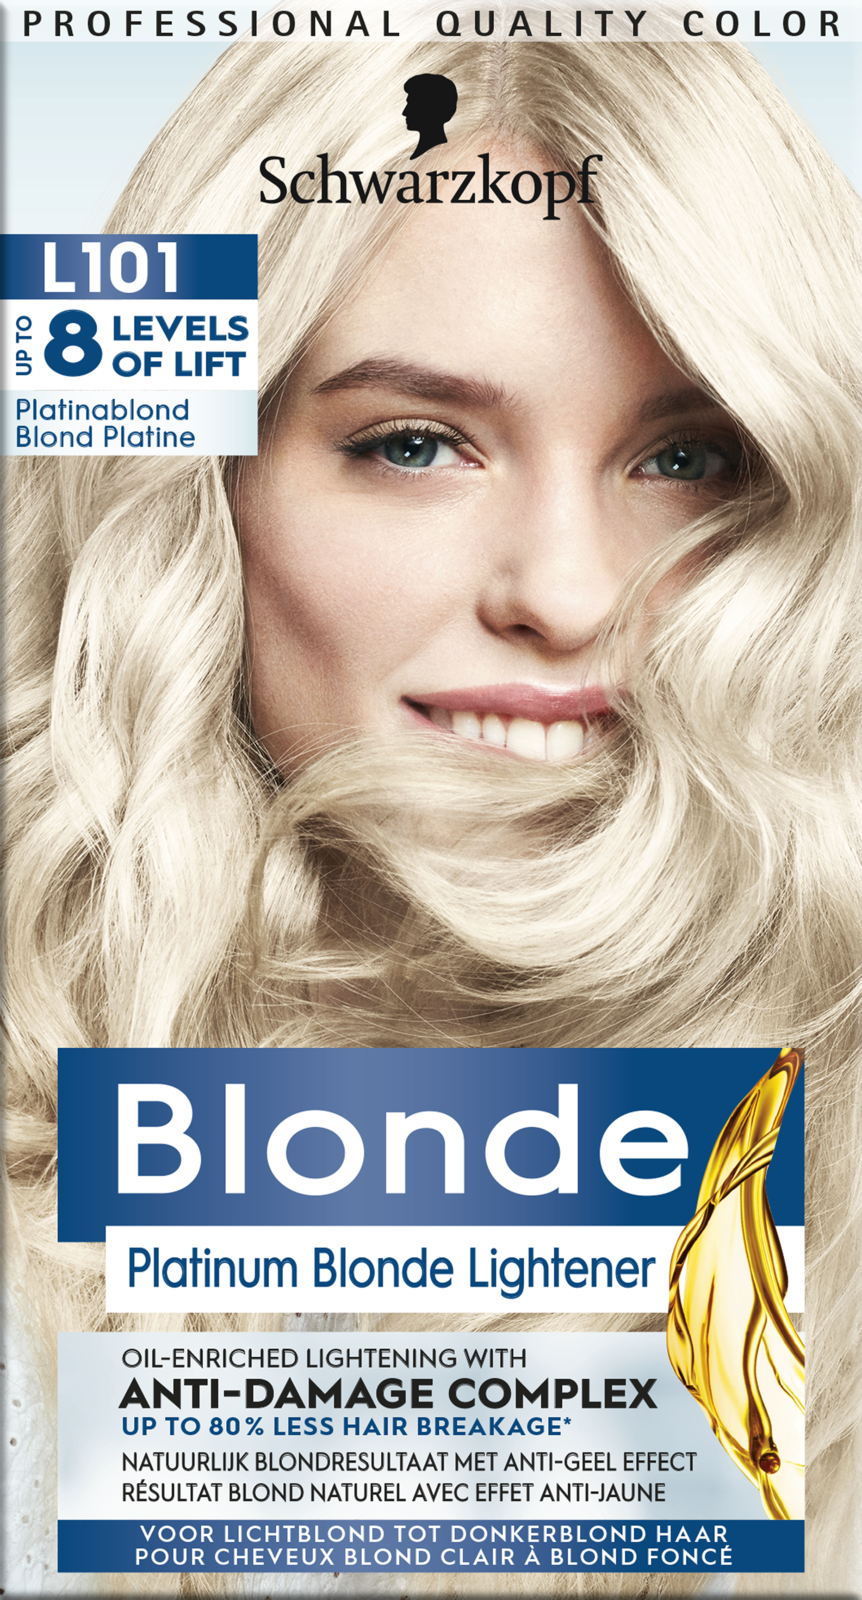 Schwarzkopf poly blonde 101 zilverblond